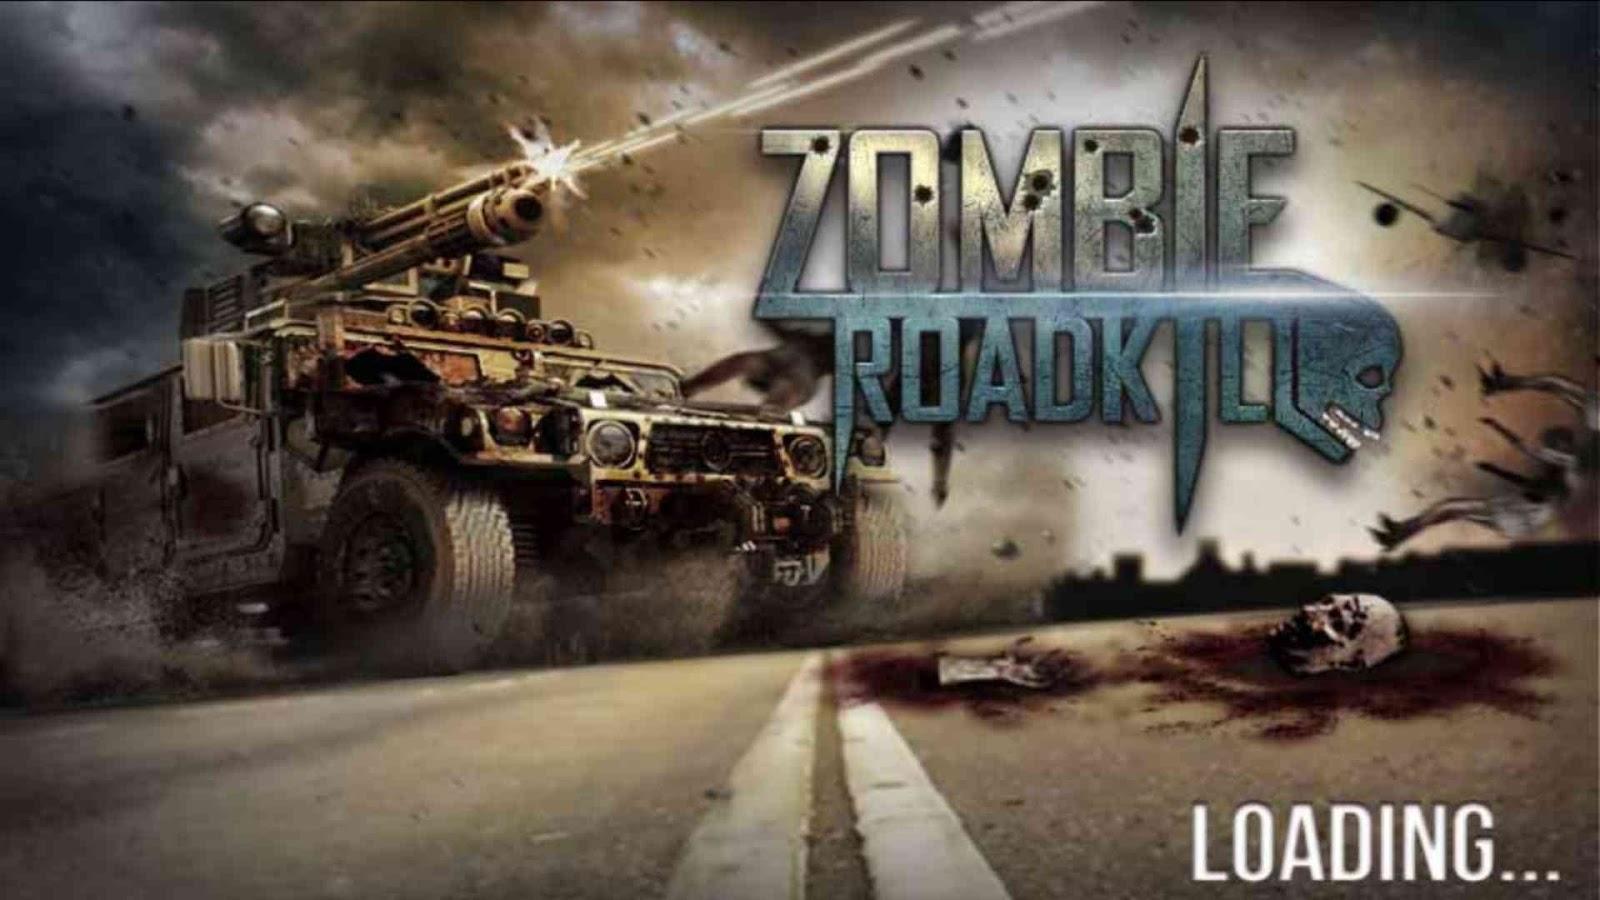 Zombie Roadkill